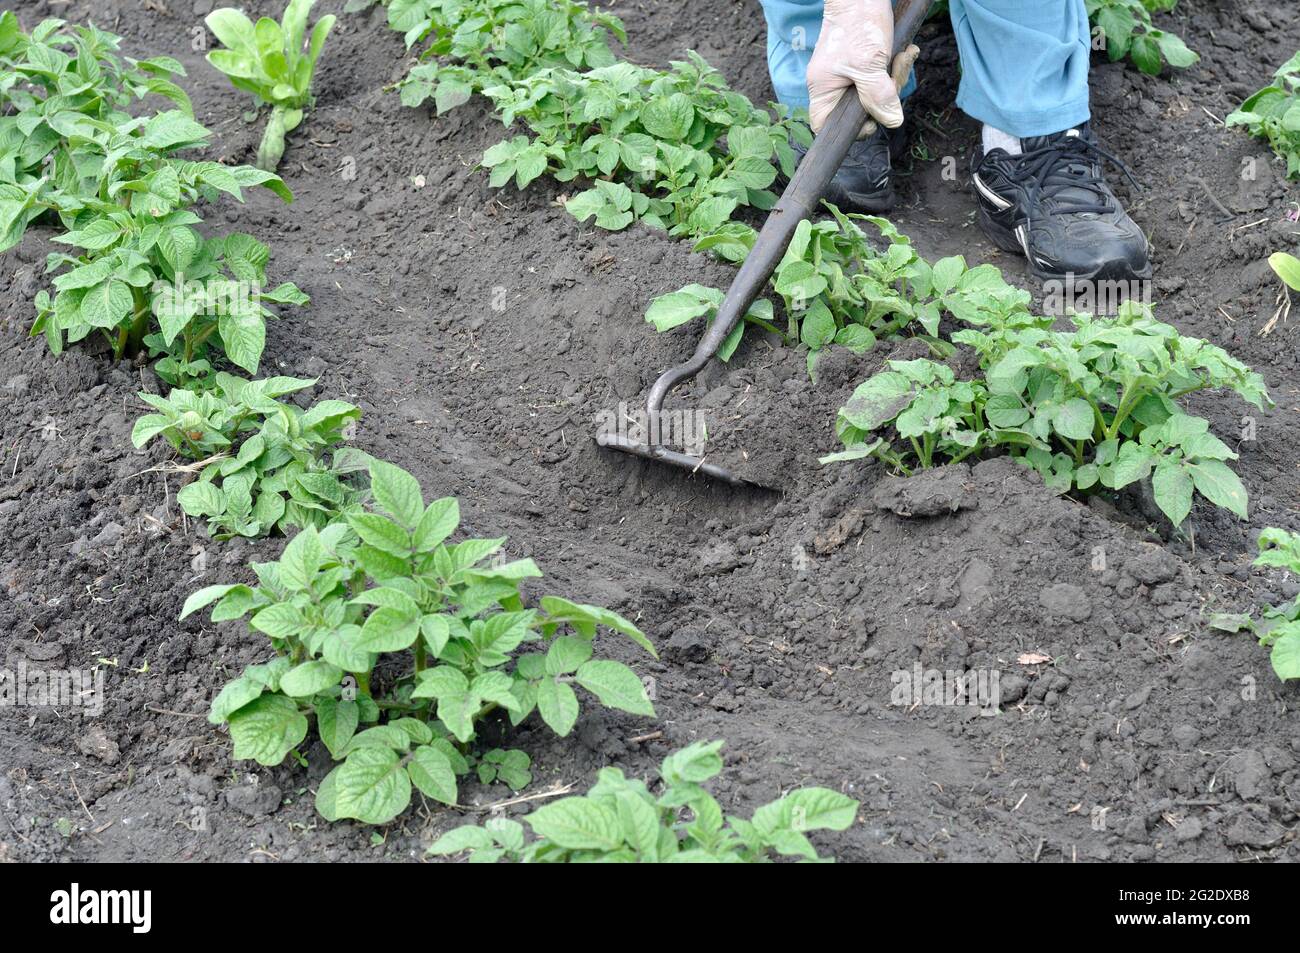 gardener hoeing the potato plantation in the vegetable garden Stock Photo